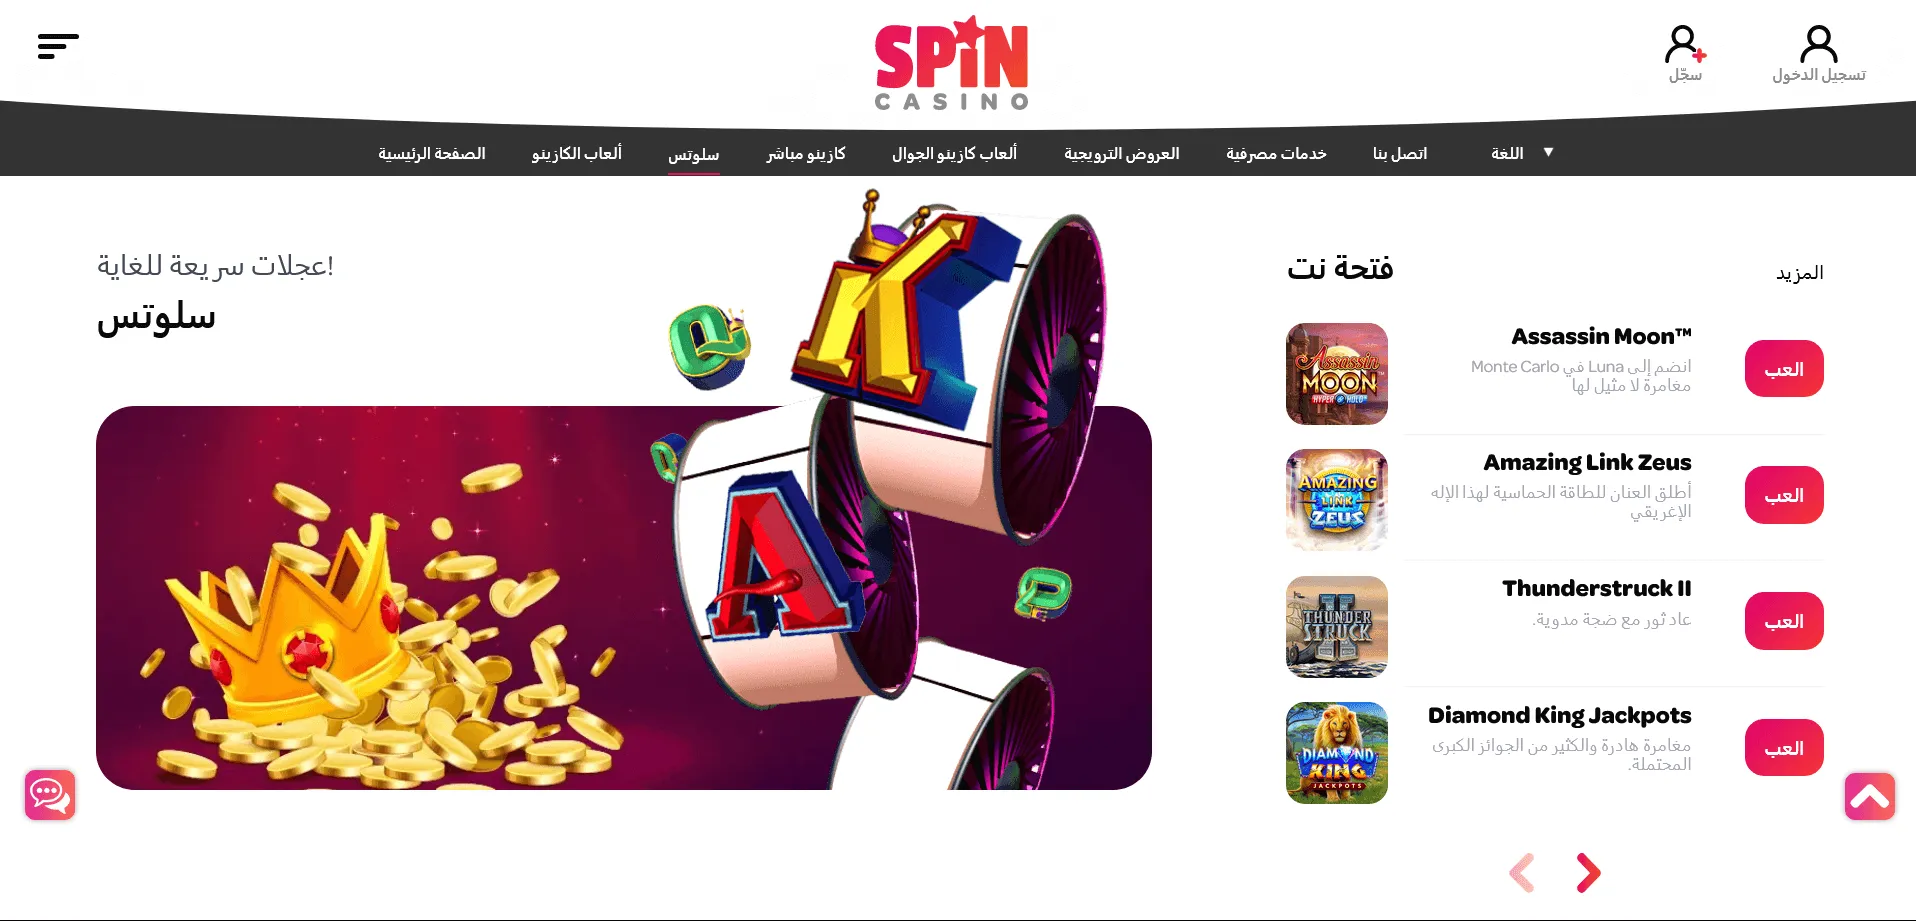 : قانونية كازينو Spin Casino في الإمارات العربية المتحدة